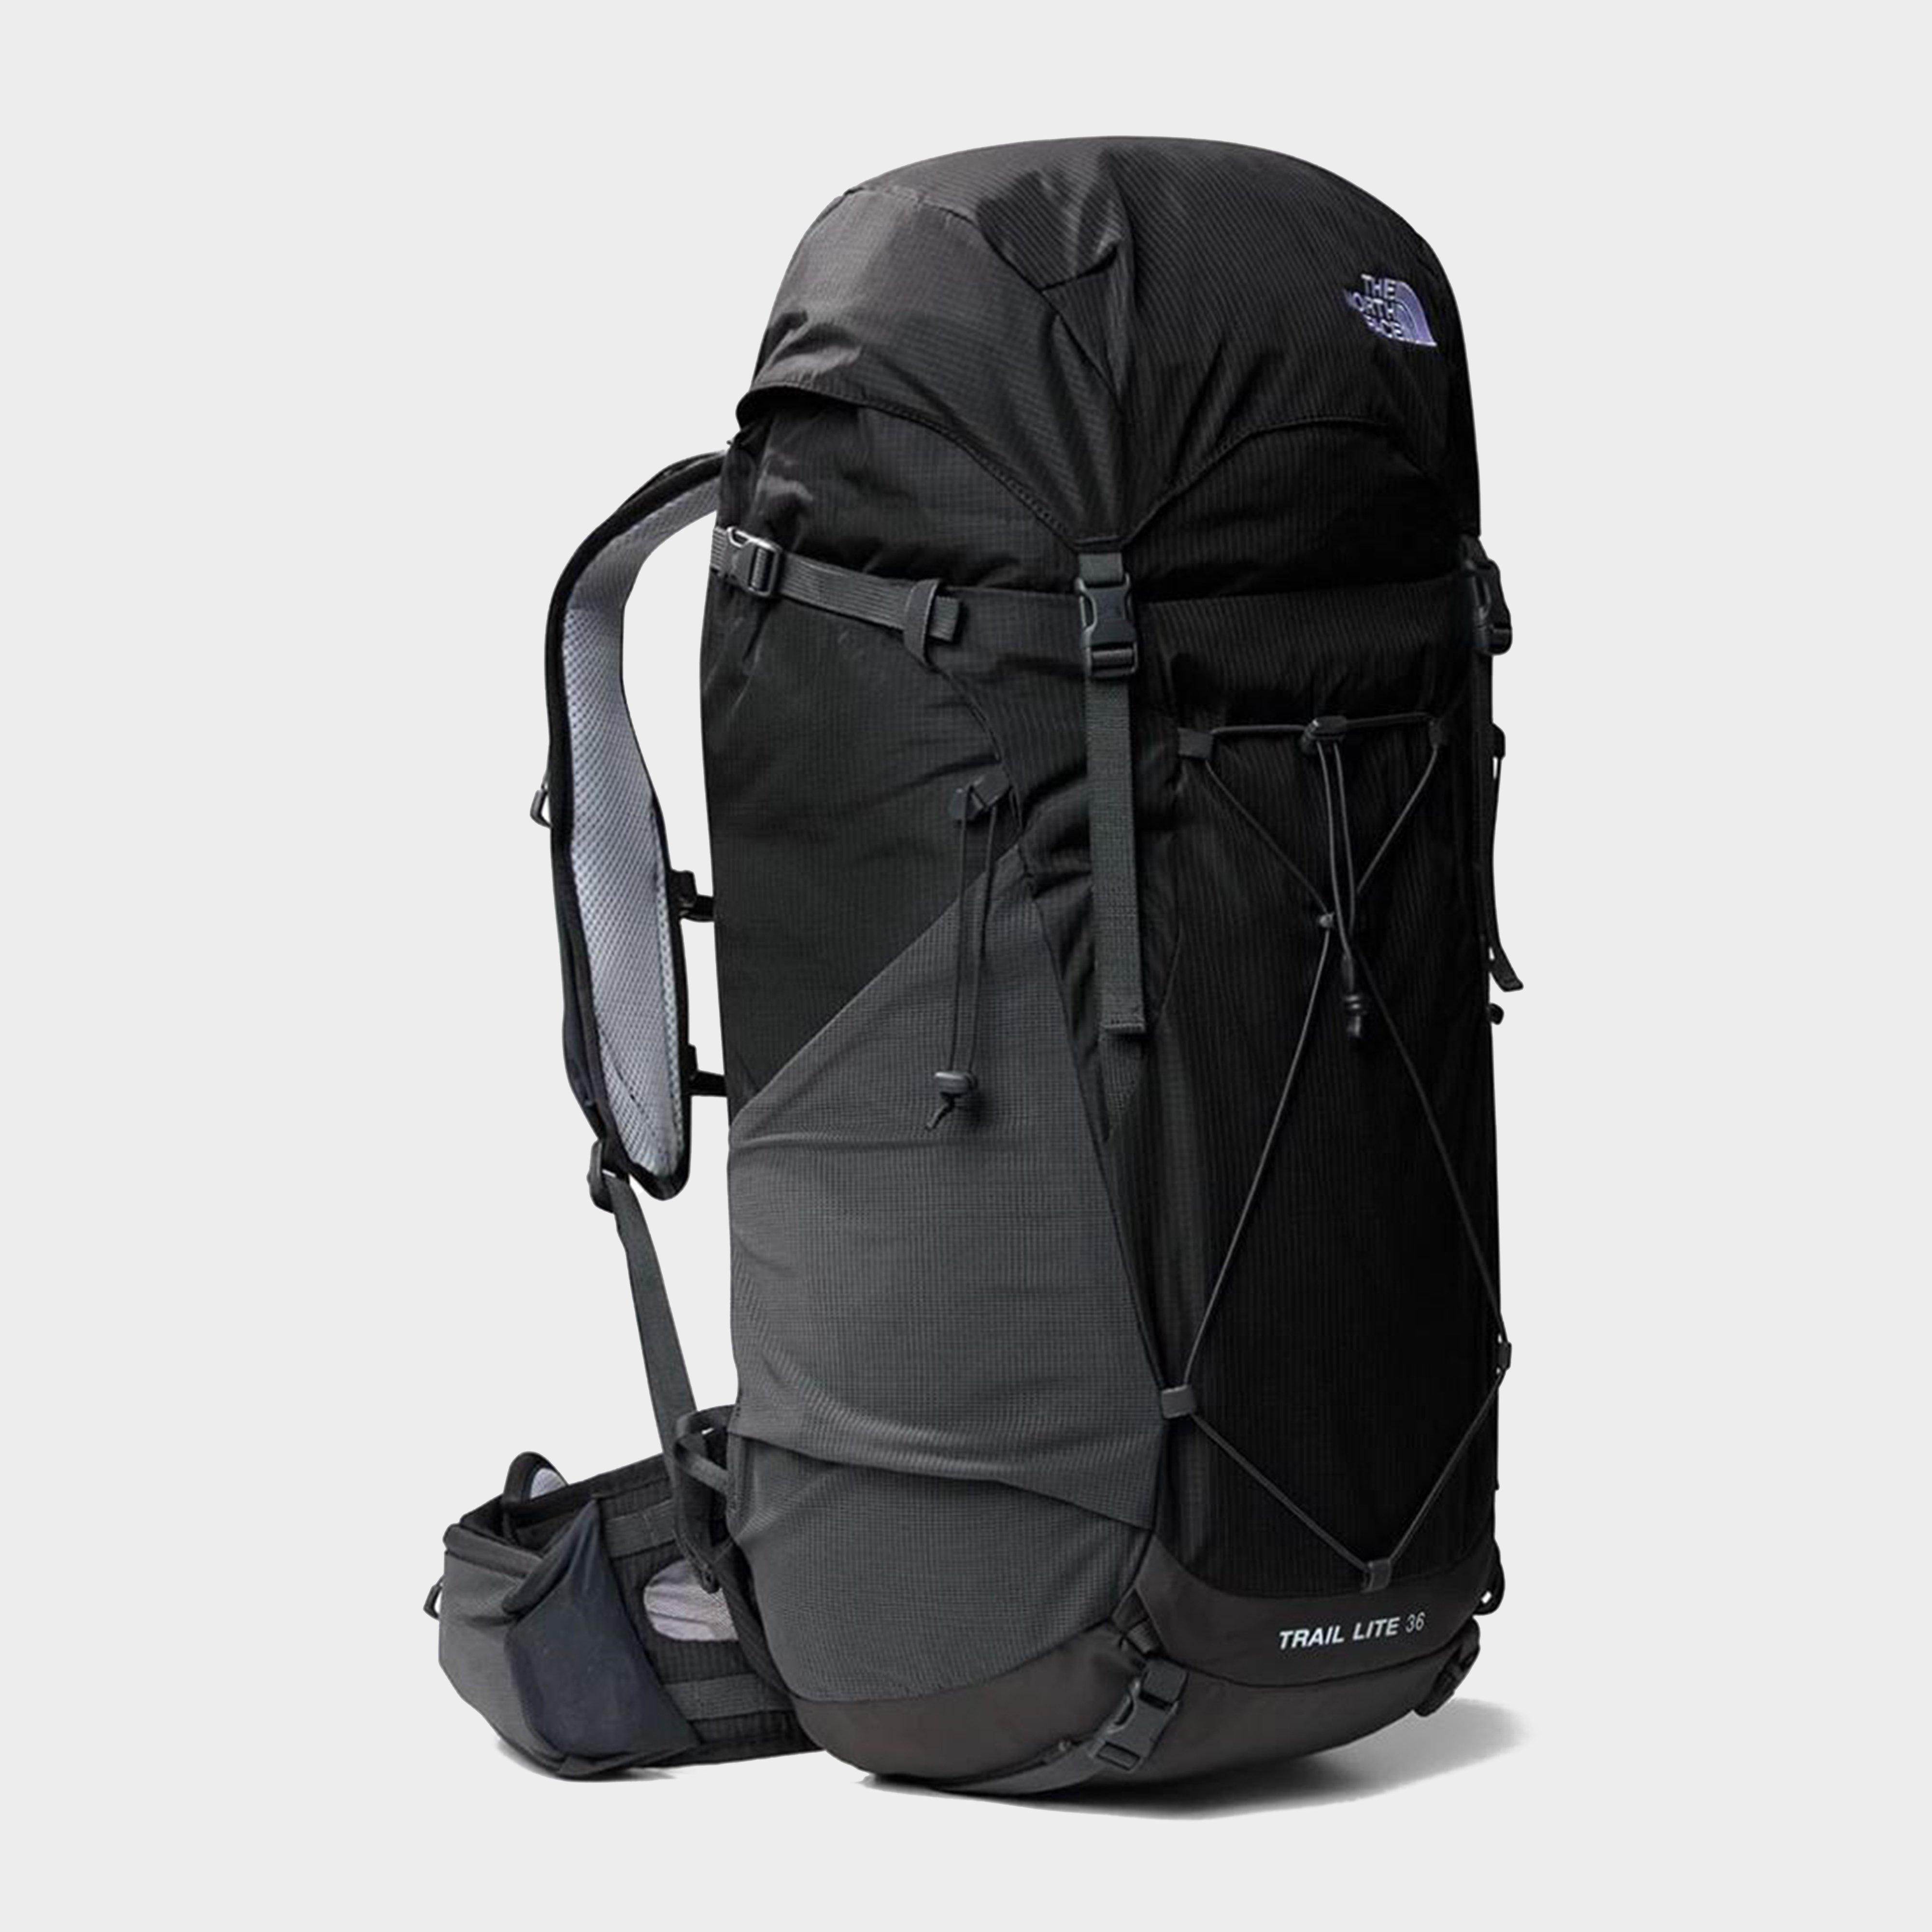 Trail Lite 36 Litre Backpack - Black, Black